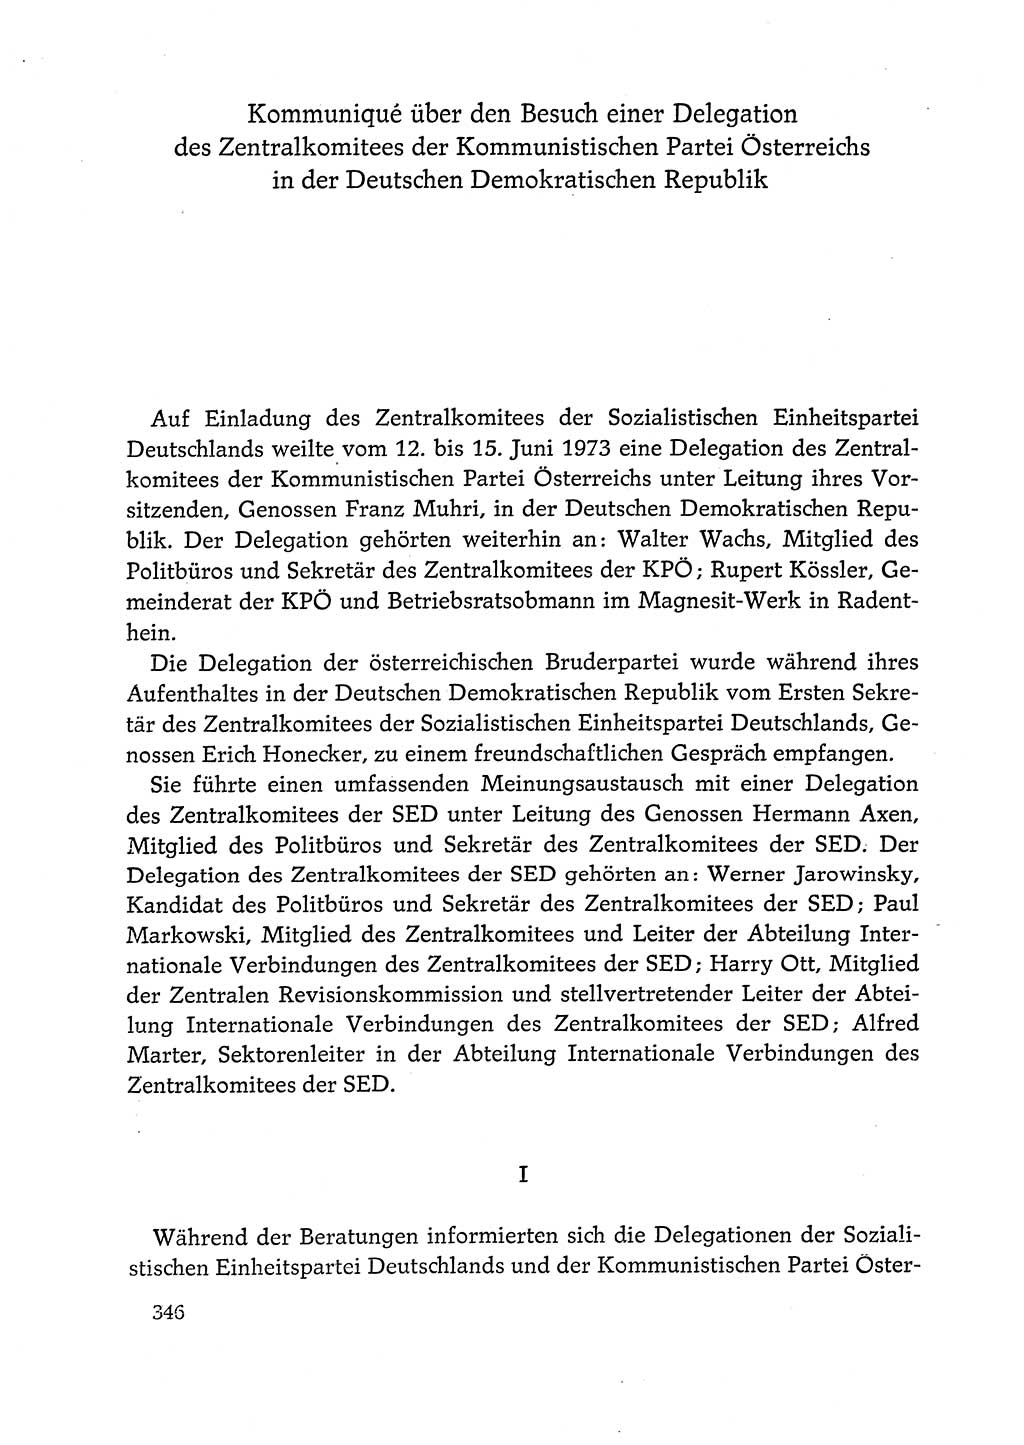 Dokumente der Sozialistischen Einheitspartei Deutschlands (SED) [Deutsche Demokratische Republik (DDR)] 1972-1973, Seite 346 (Dok. SED DDR 1972-1973, S. 346)